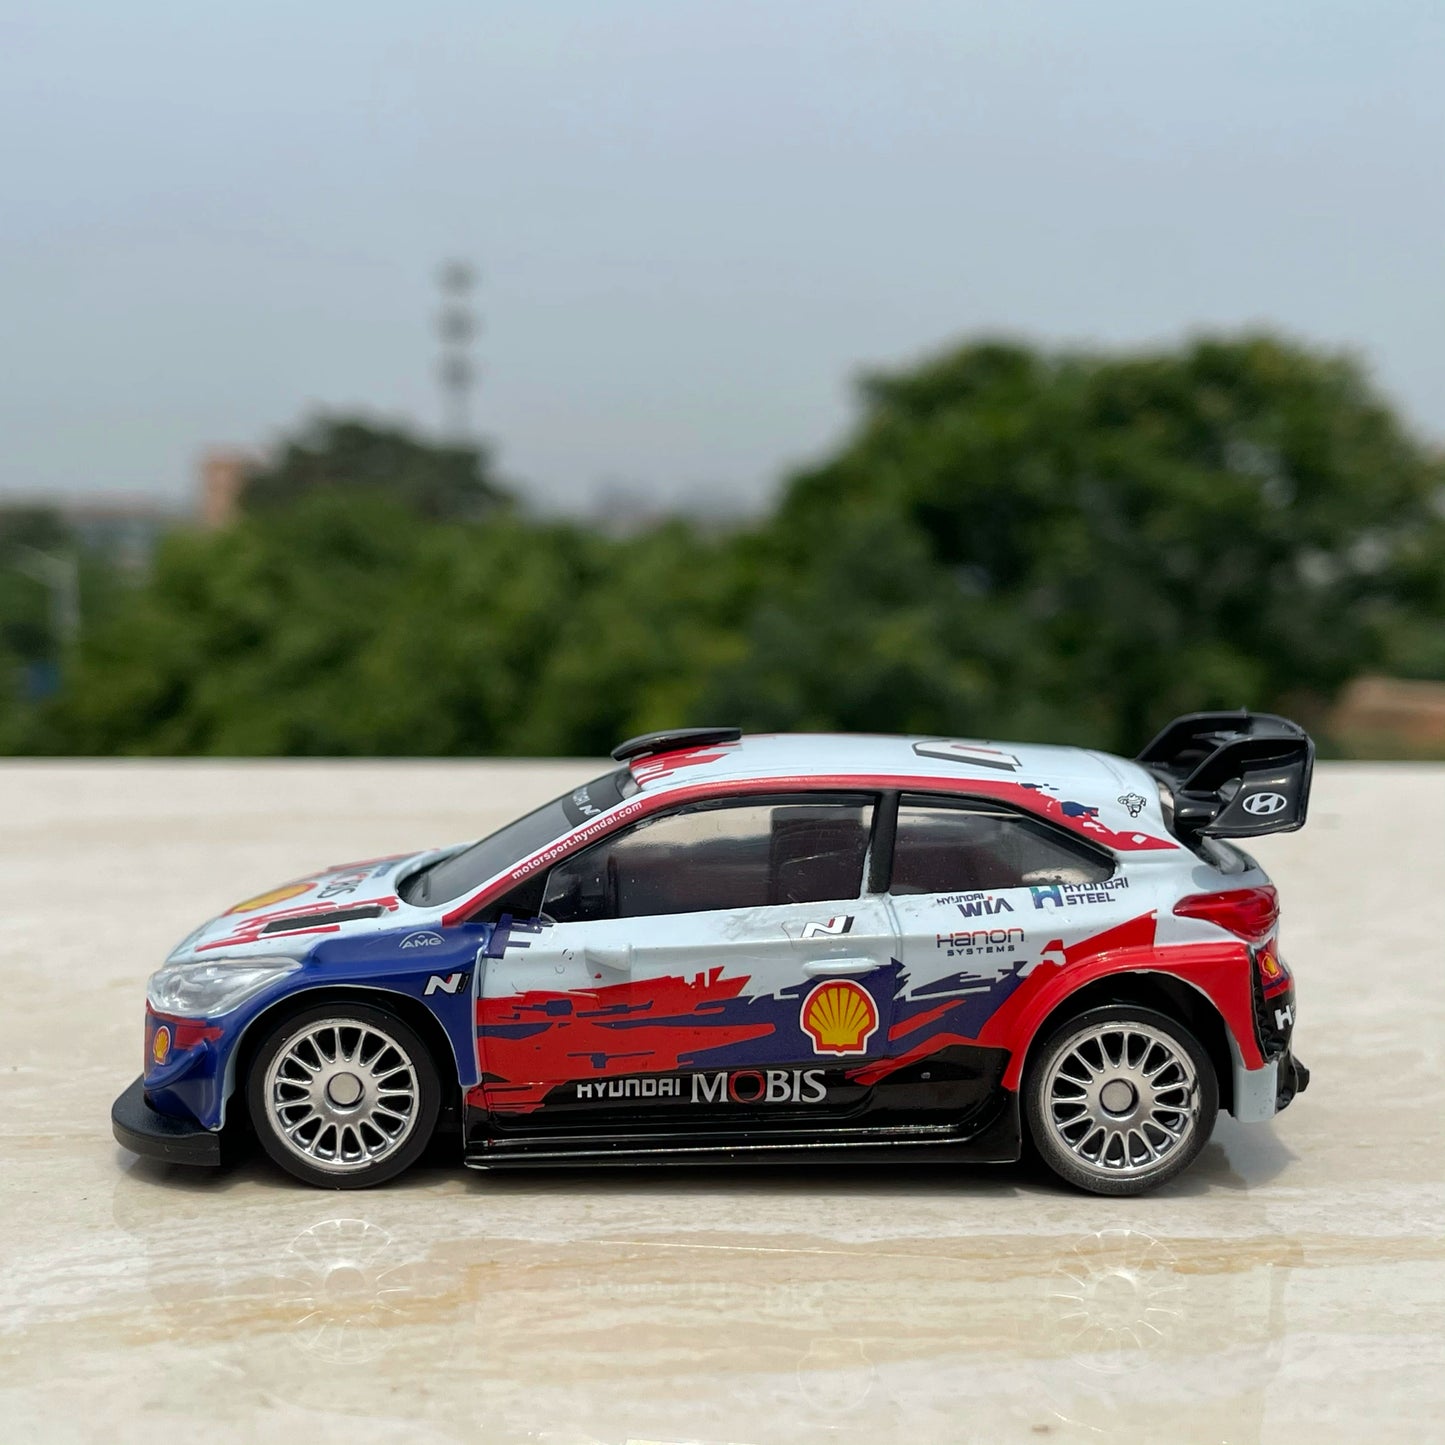 1/43 Scale Hyundai i20 WRC Rally Car Diecast Model